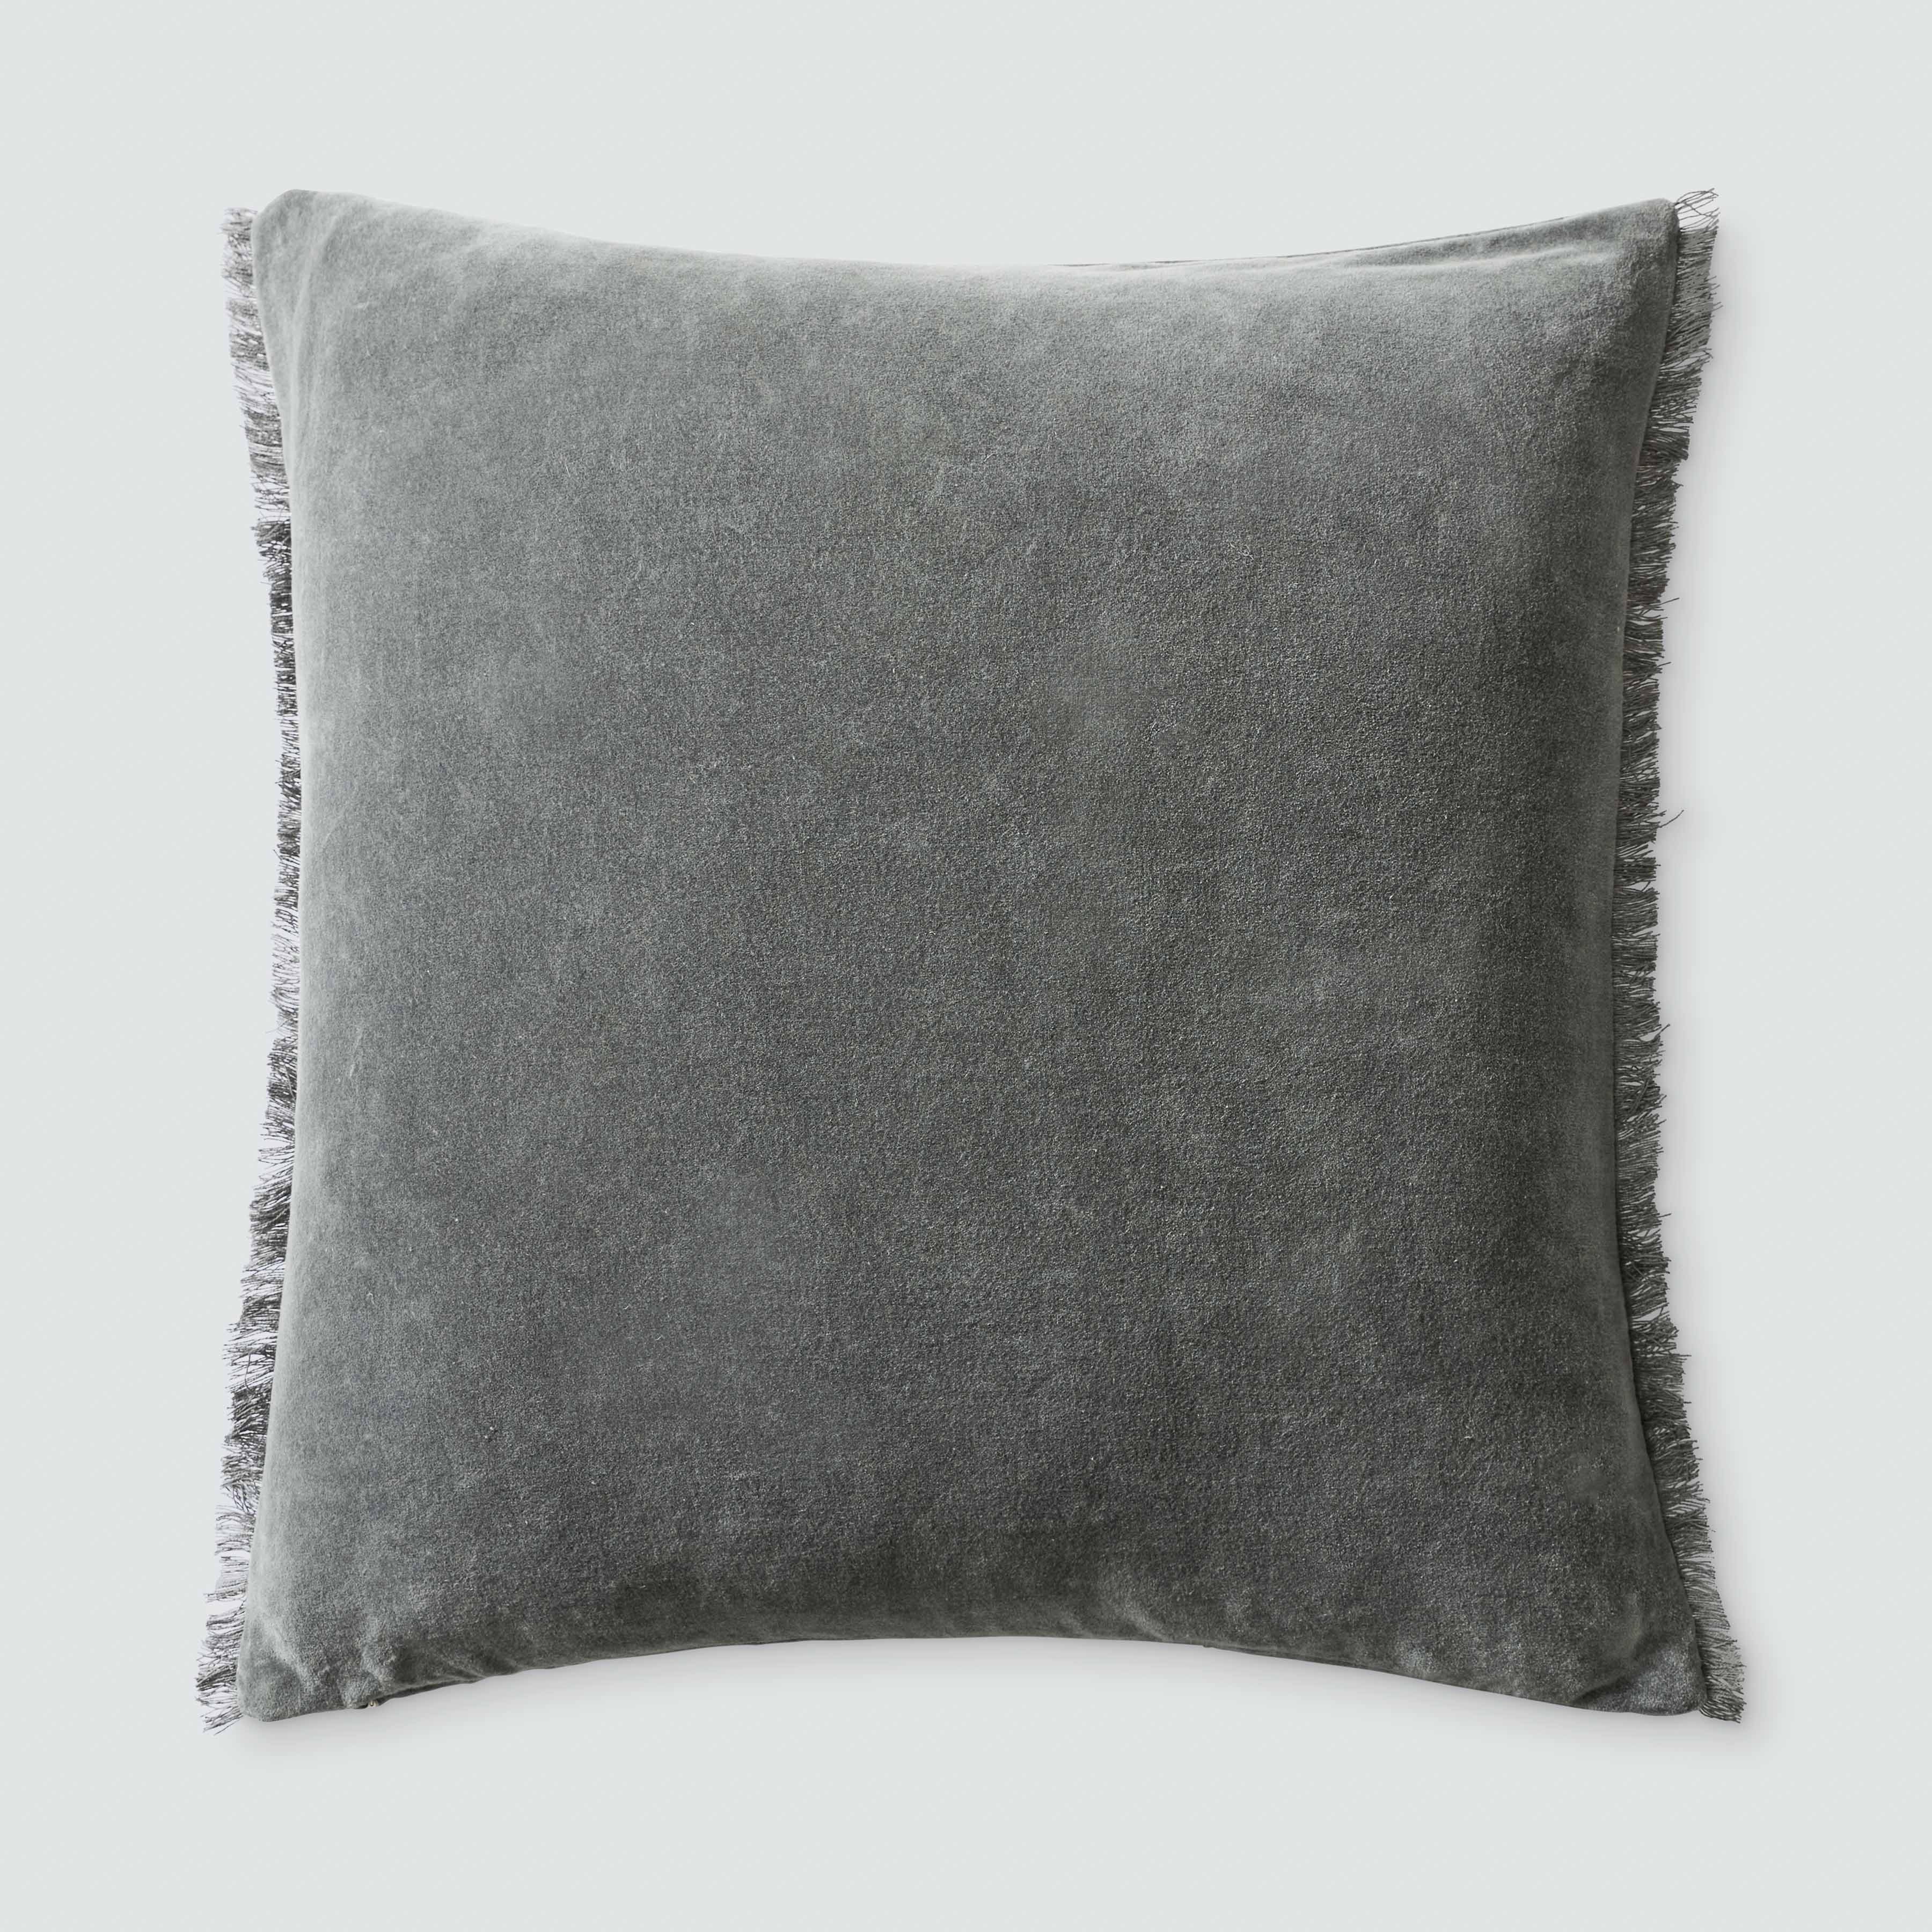 The Citizenry Naveta Velvet Pillow | 22" x 22" | Blue - Image 3